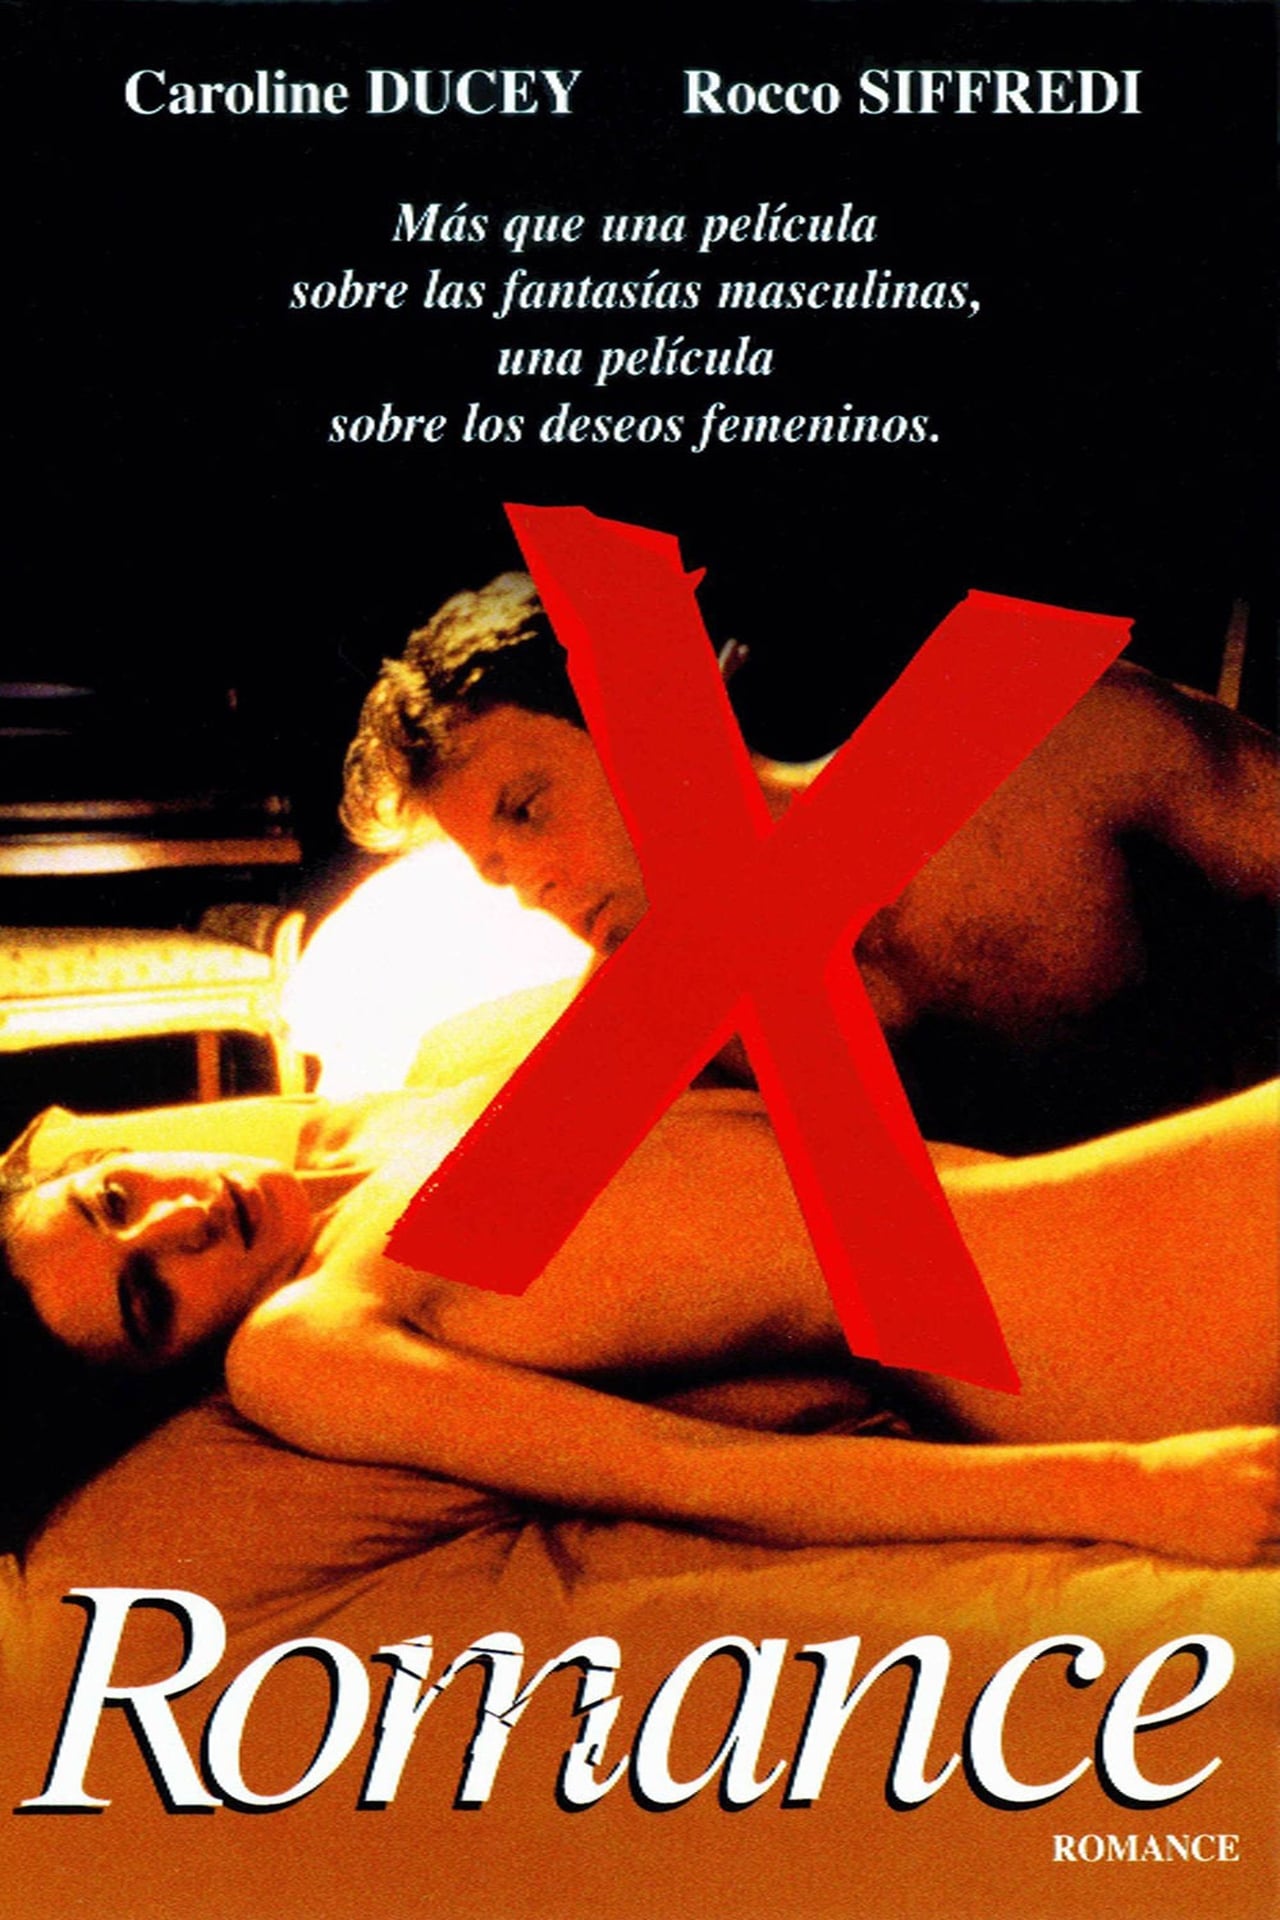 Descargar película completa de eróticas en español